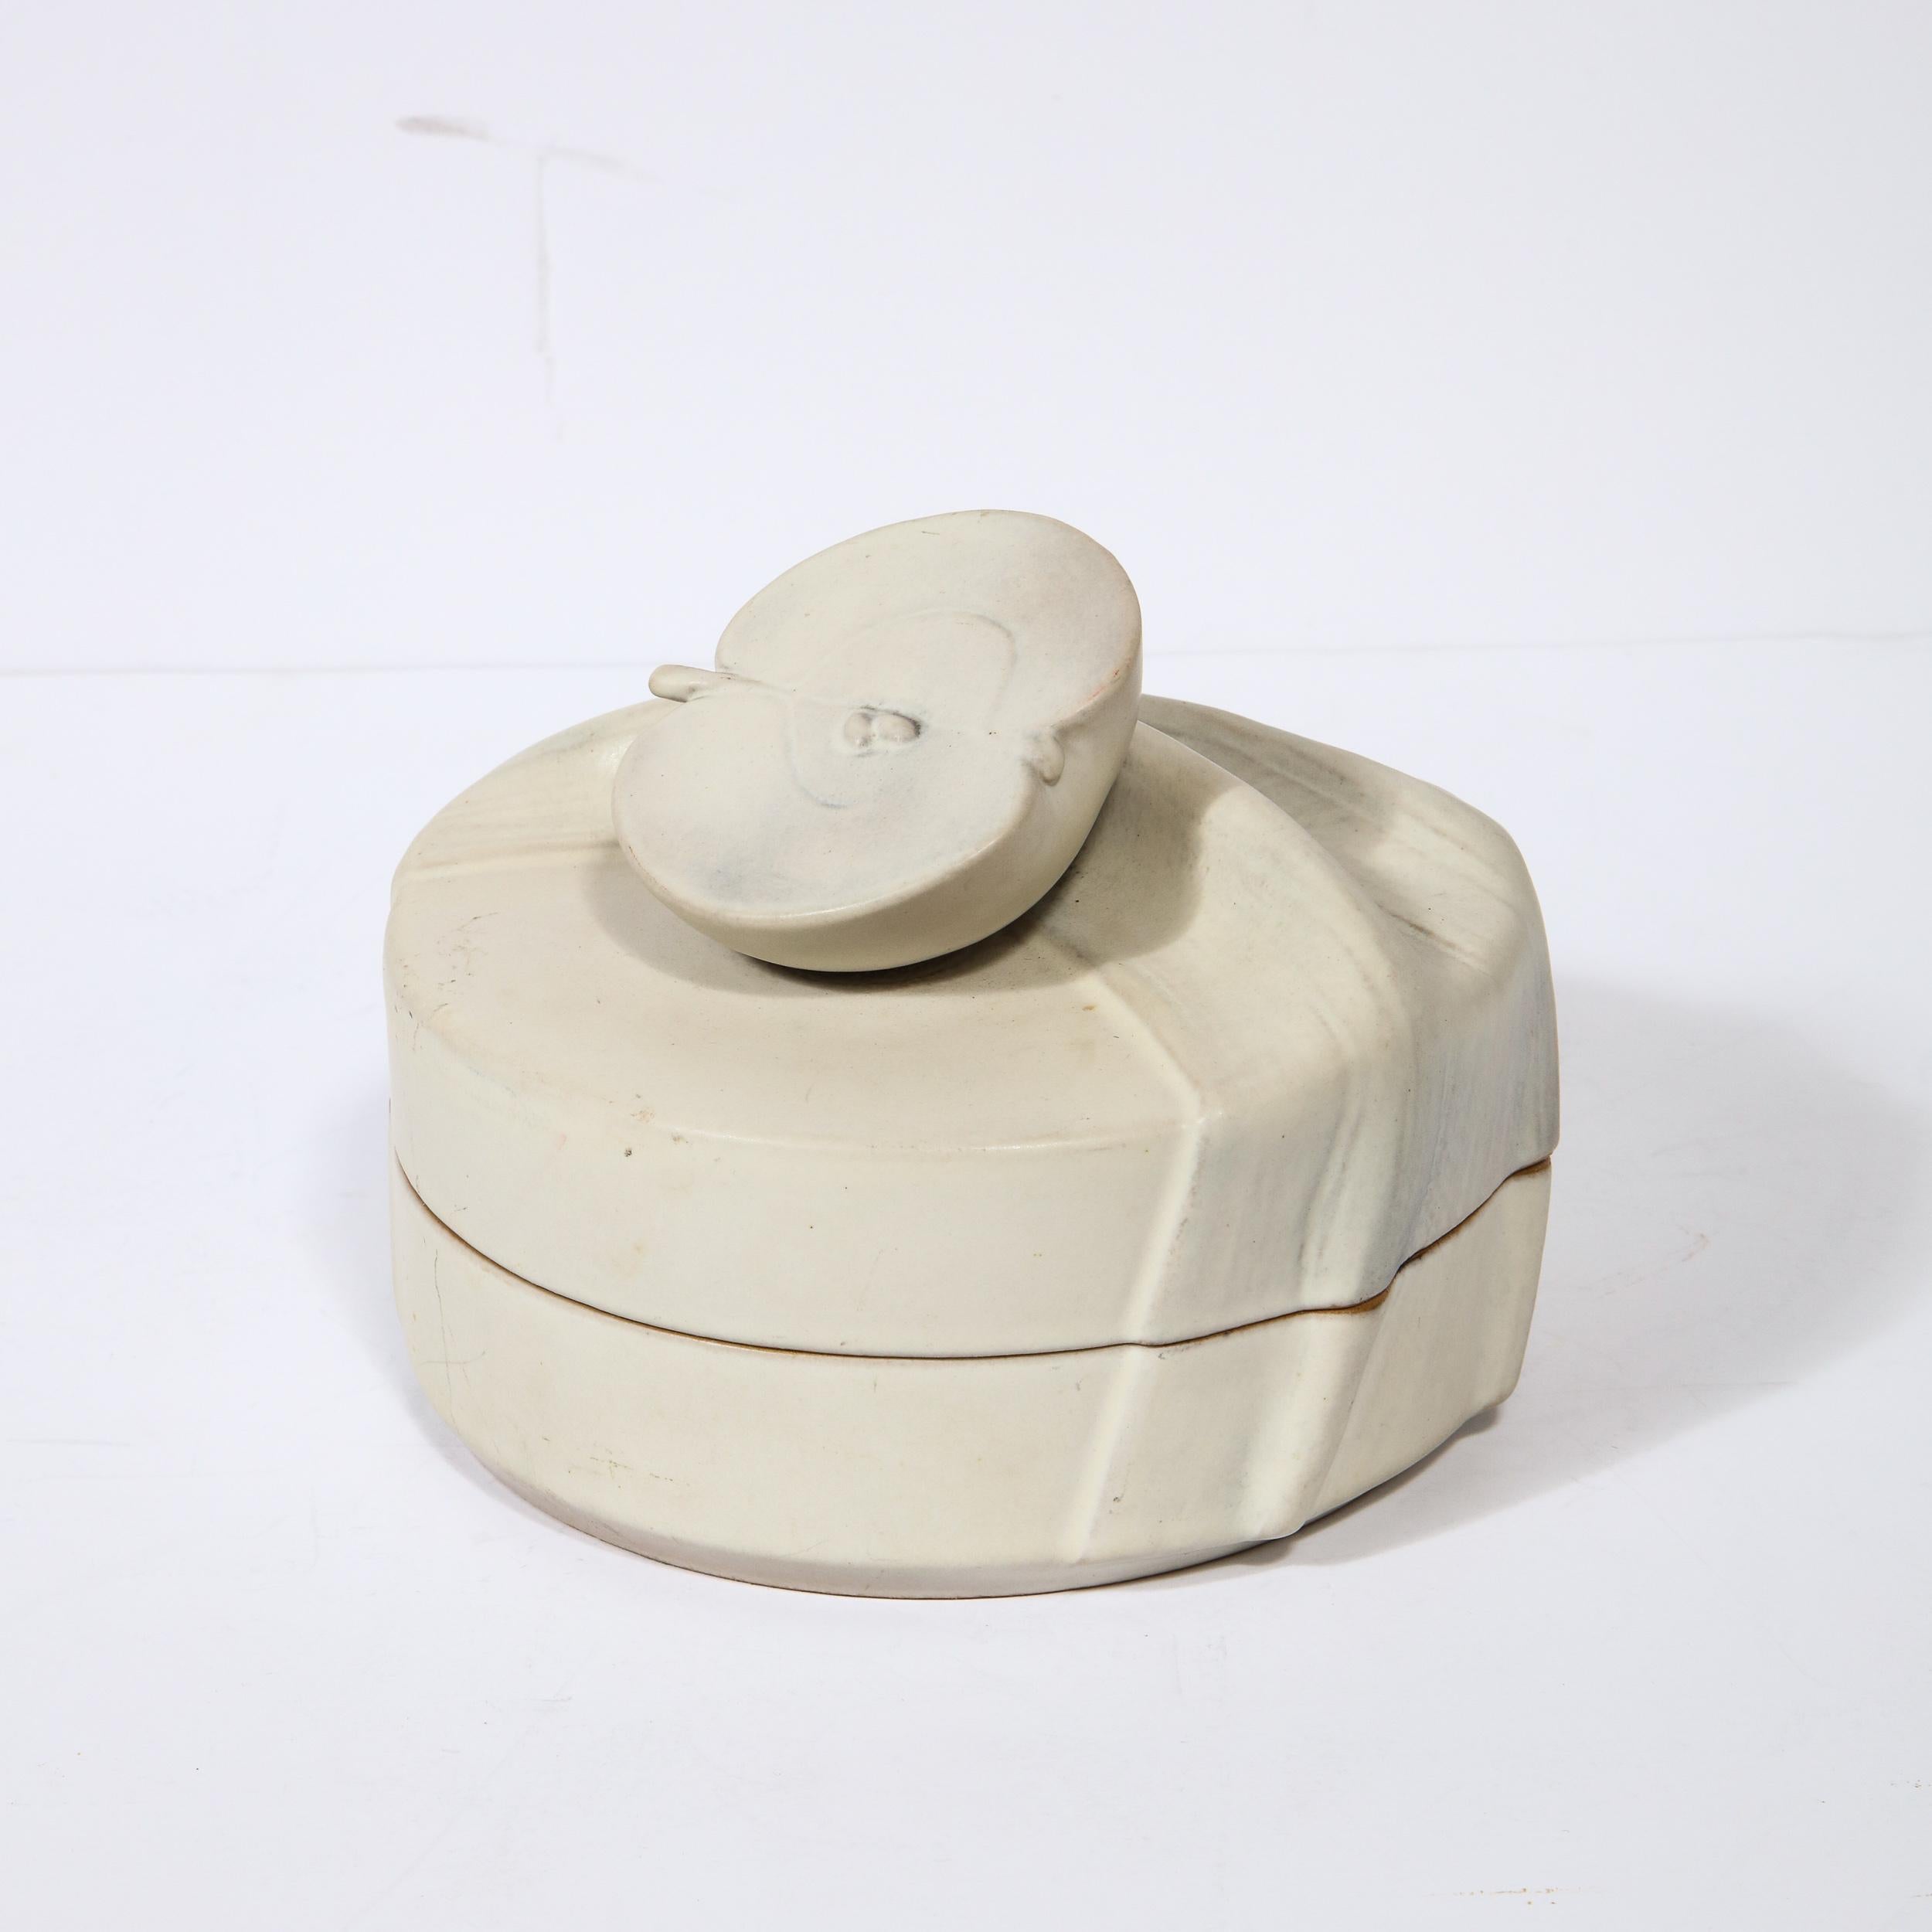 Cette boîte à couvercle sophistiquée en céramique a été réalisée par l'estimable fabricant Rosenthal. Elle présente un corps rond avec une traction sculpturale sous la forme d'une pomme coupée en deux, posée sur une surface texturée qui ressemble à